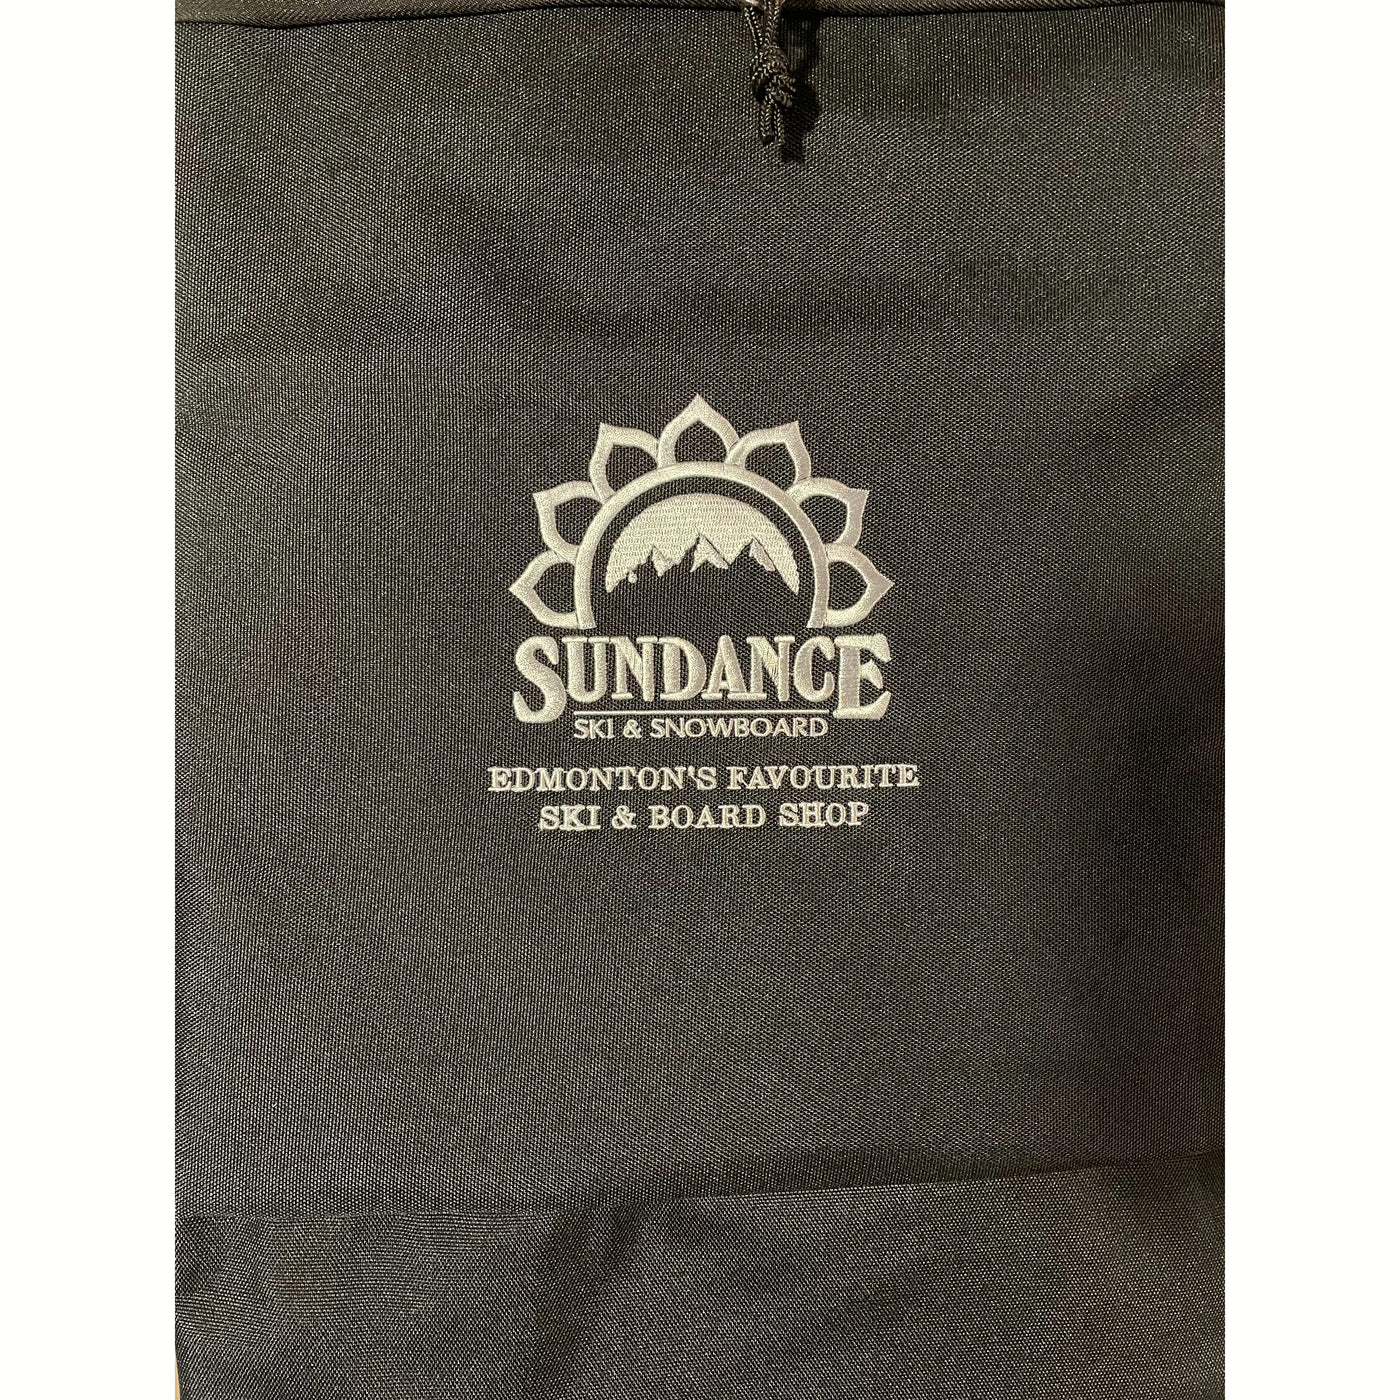 K&B Sundance Snowboard Bag